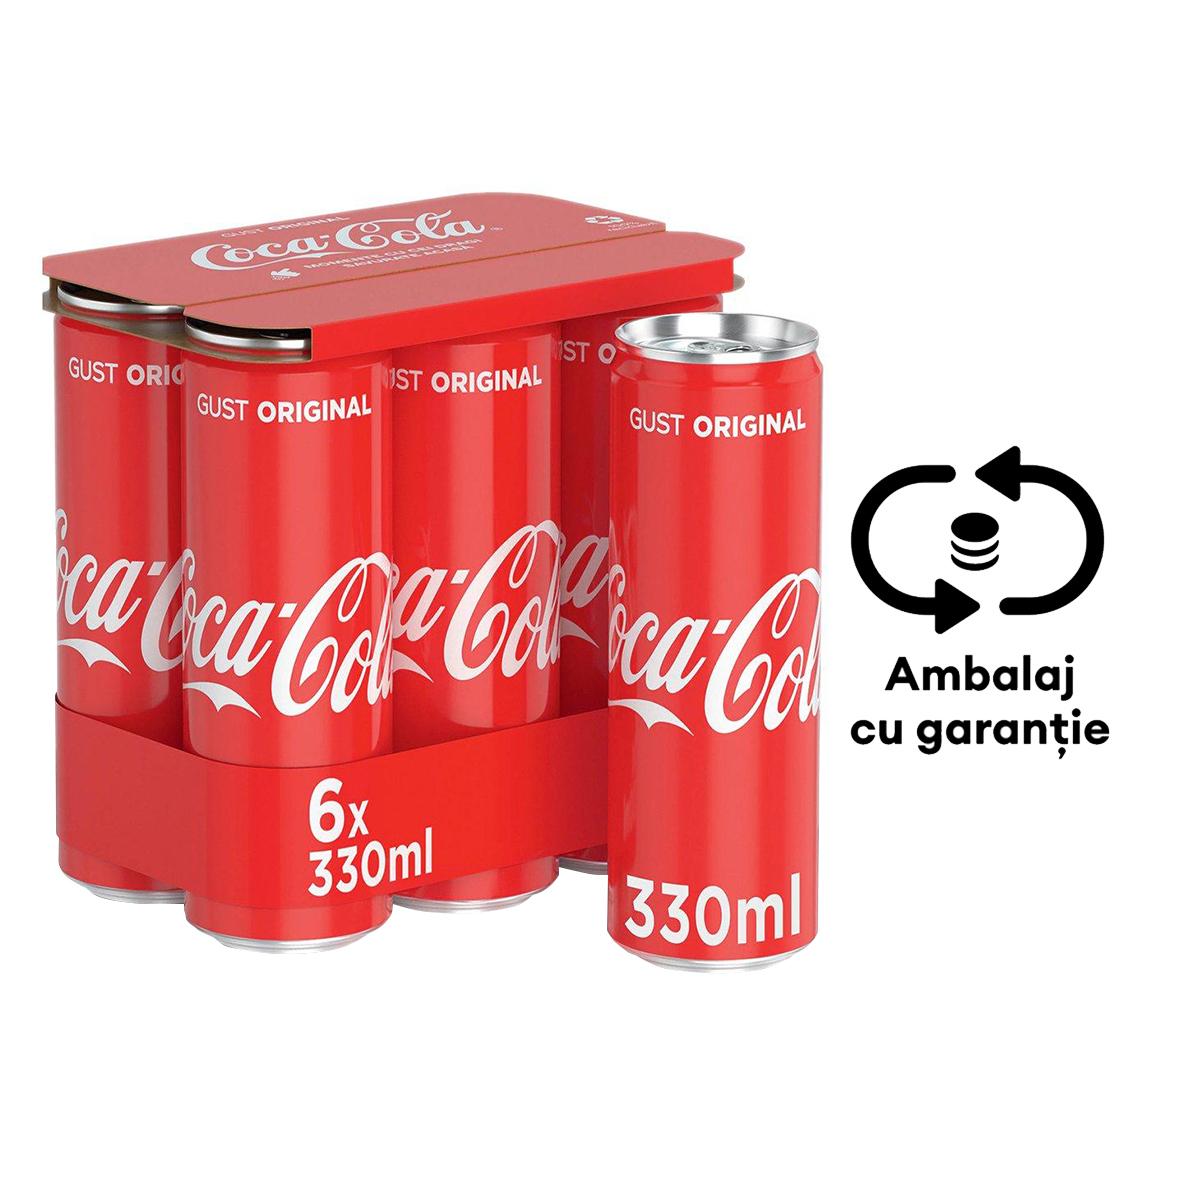 Bautura racoritoare carbogazoasa Coca-Cola, 0.33 l, 6 bucati/bax, eticheta SGR